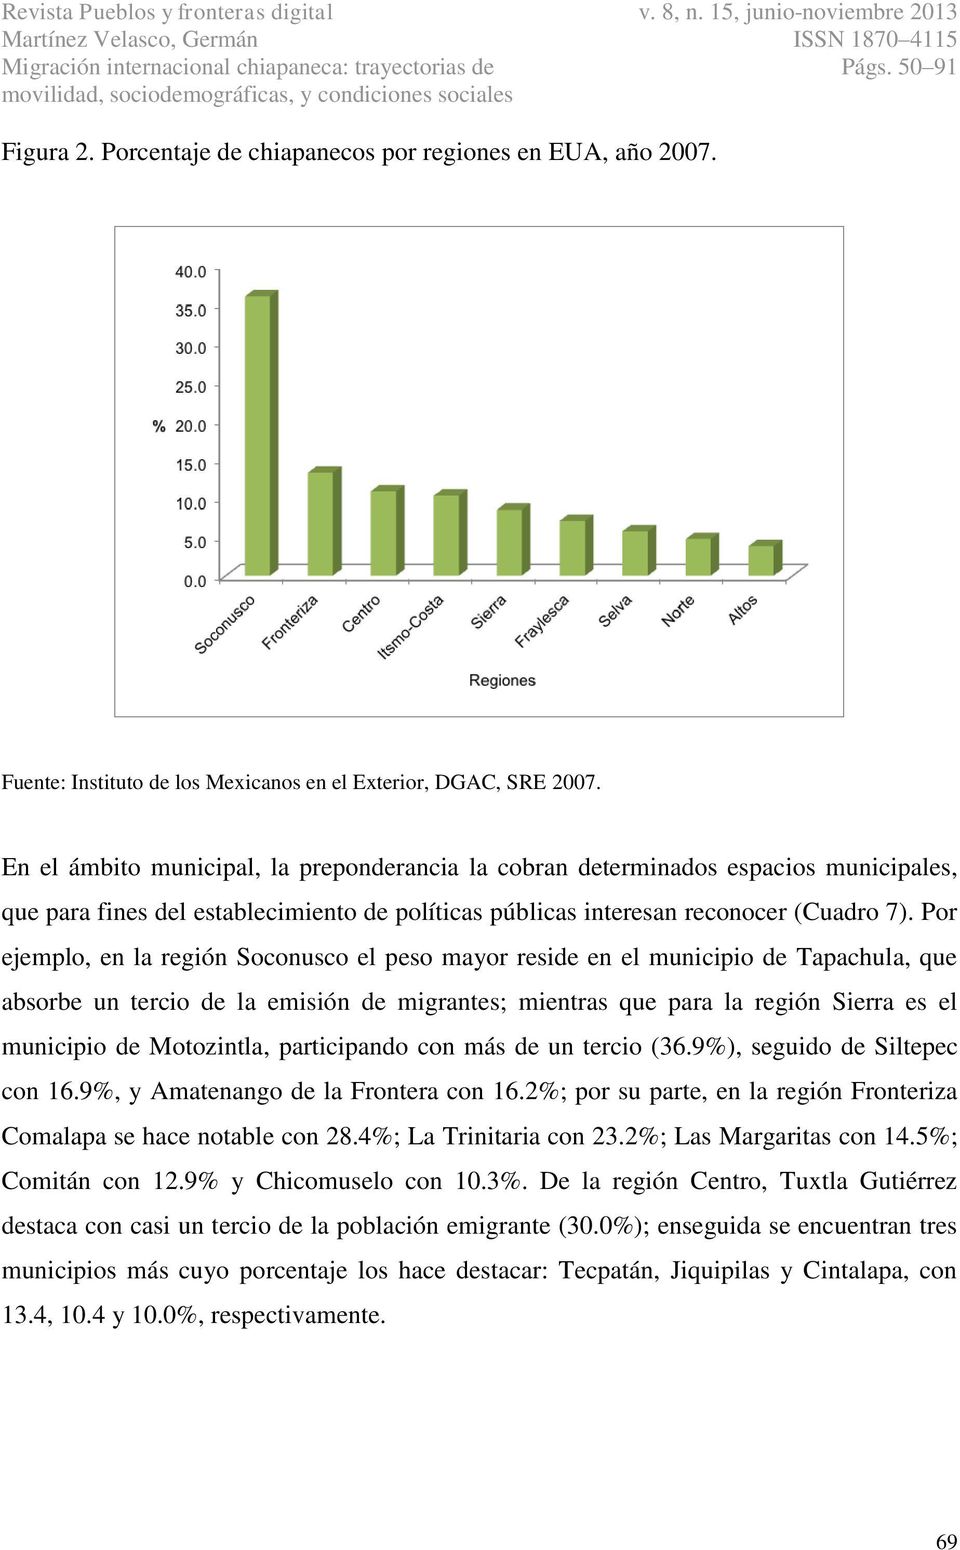 Por ejemplo, en la región Soconusco el peso mayor reside en el municipio de Tapachula, que absorbe un tercio de la emisión de migrantes; mientras que para la región Sierra es el municipio de